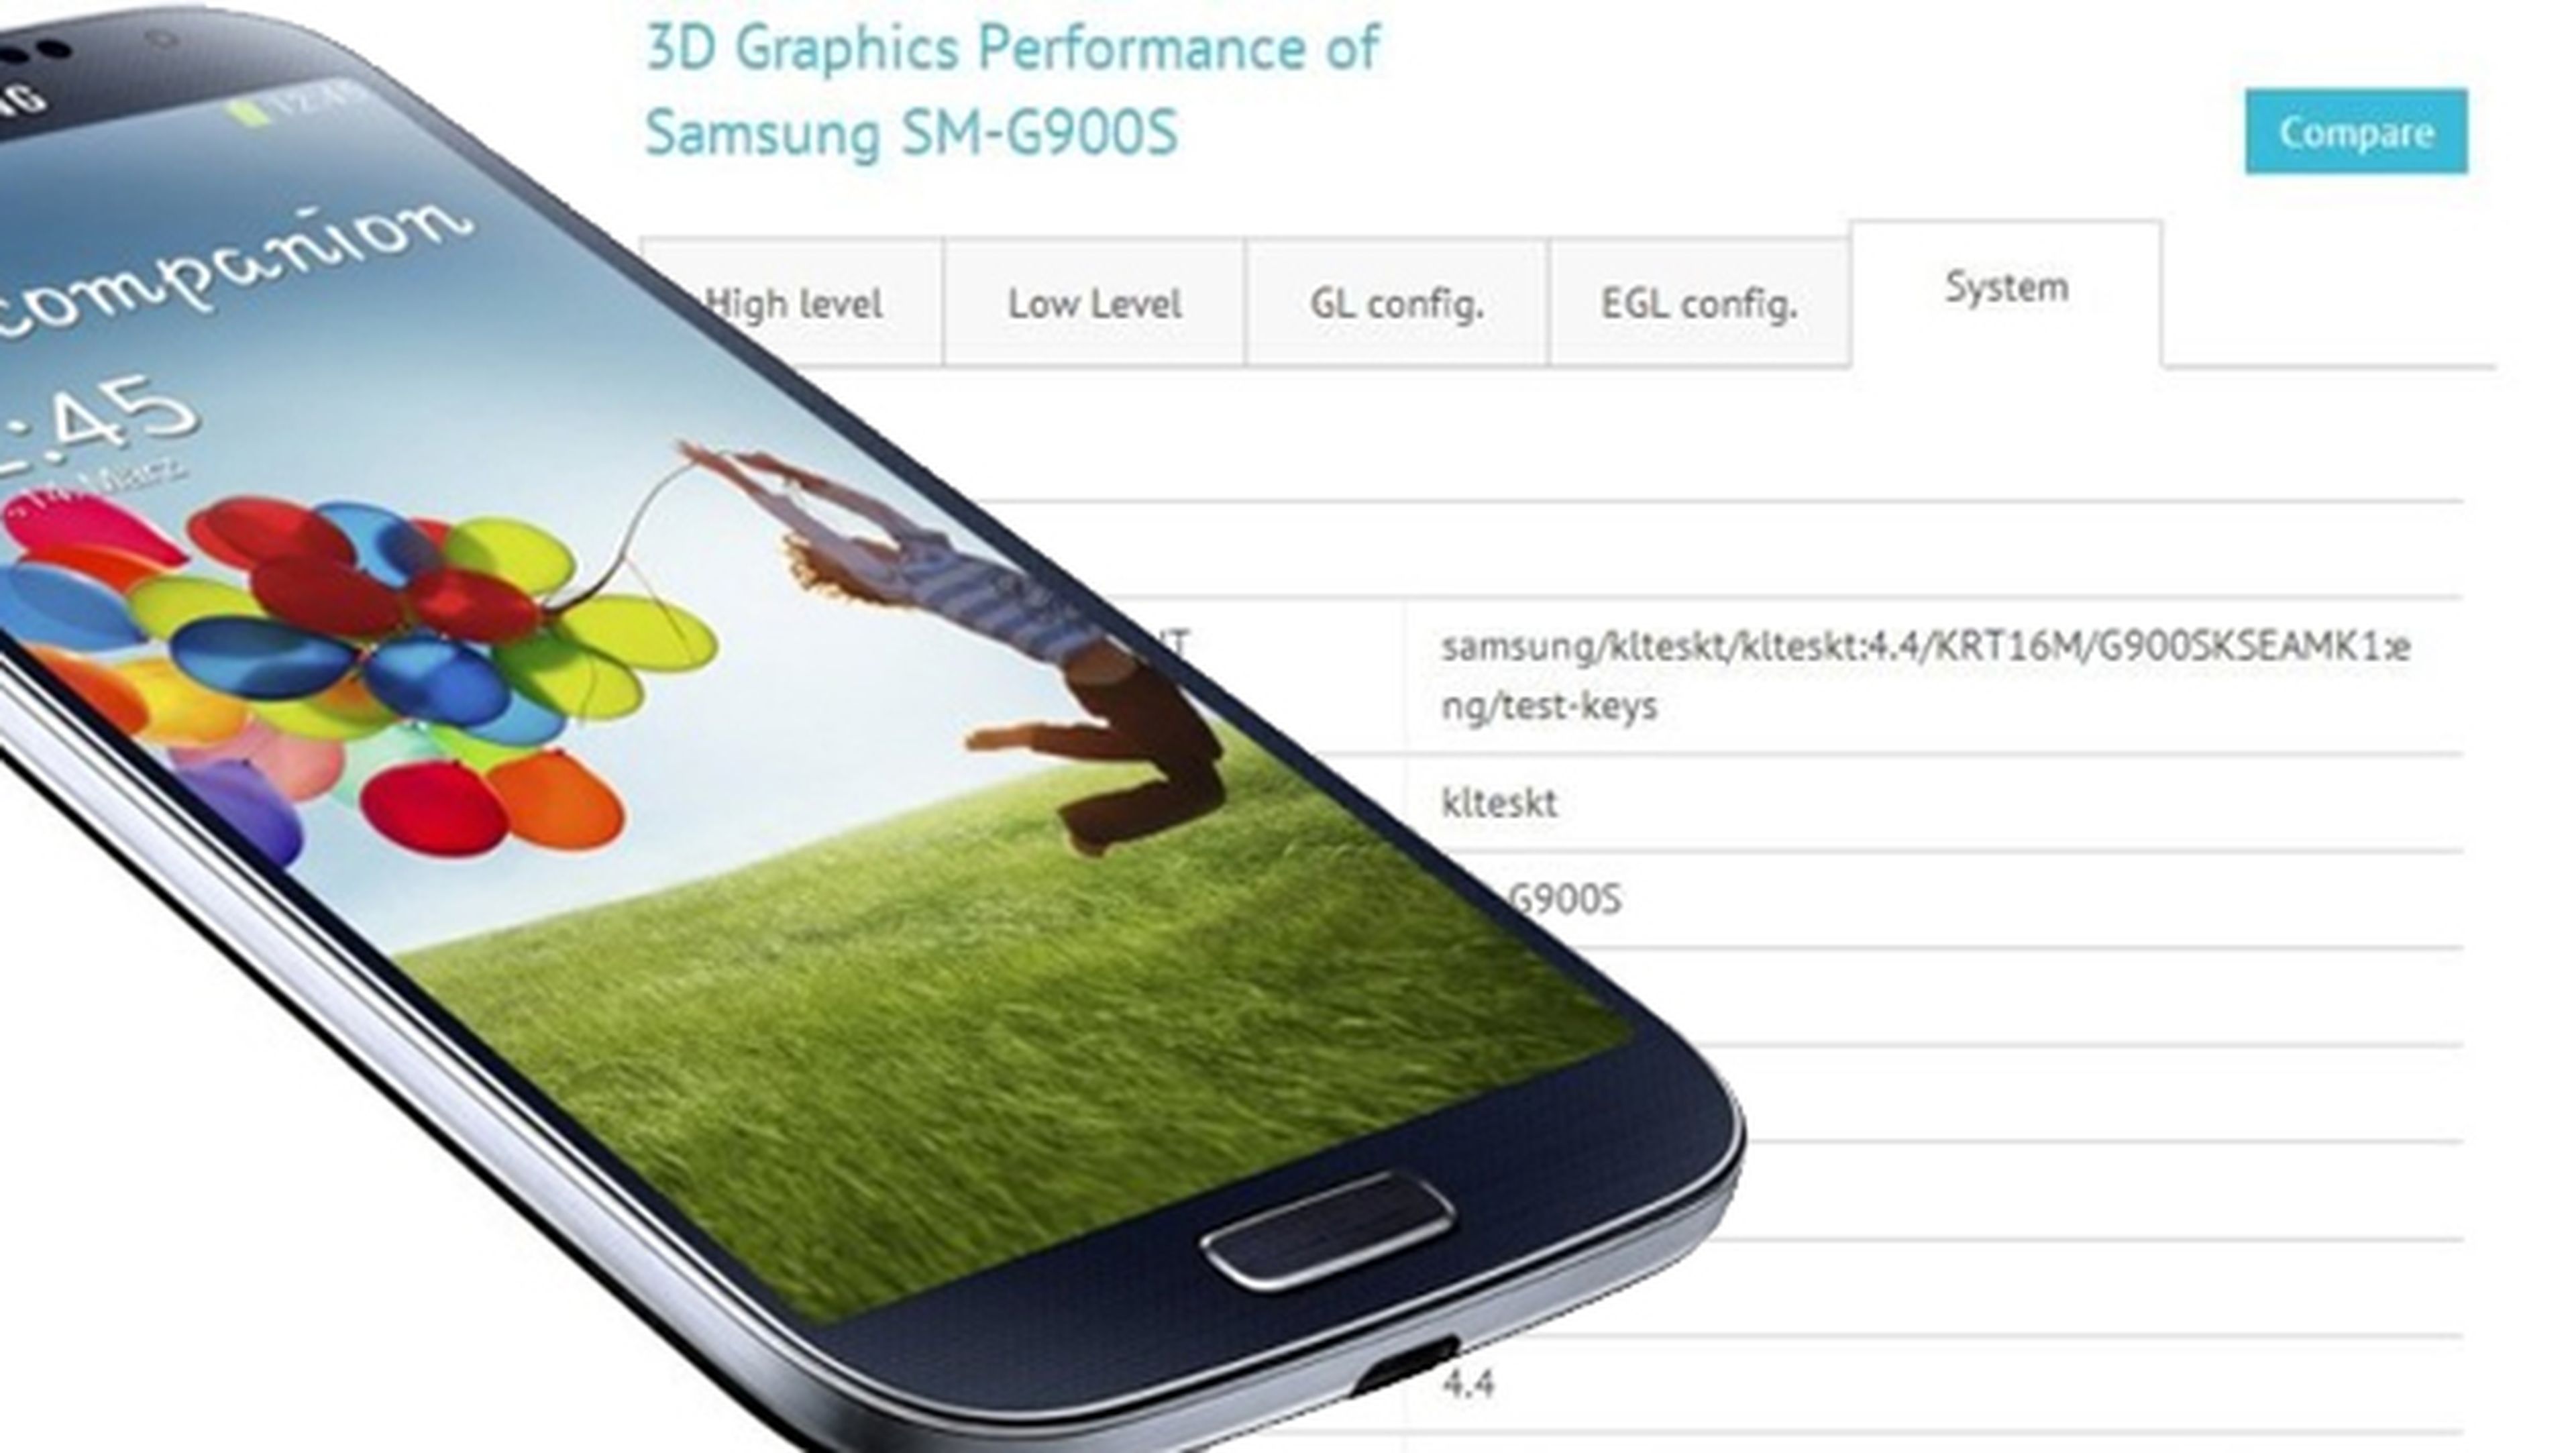 Samsung Galaxy S5 benchmark